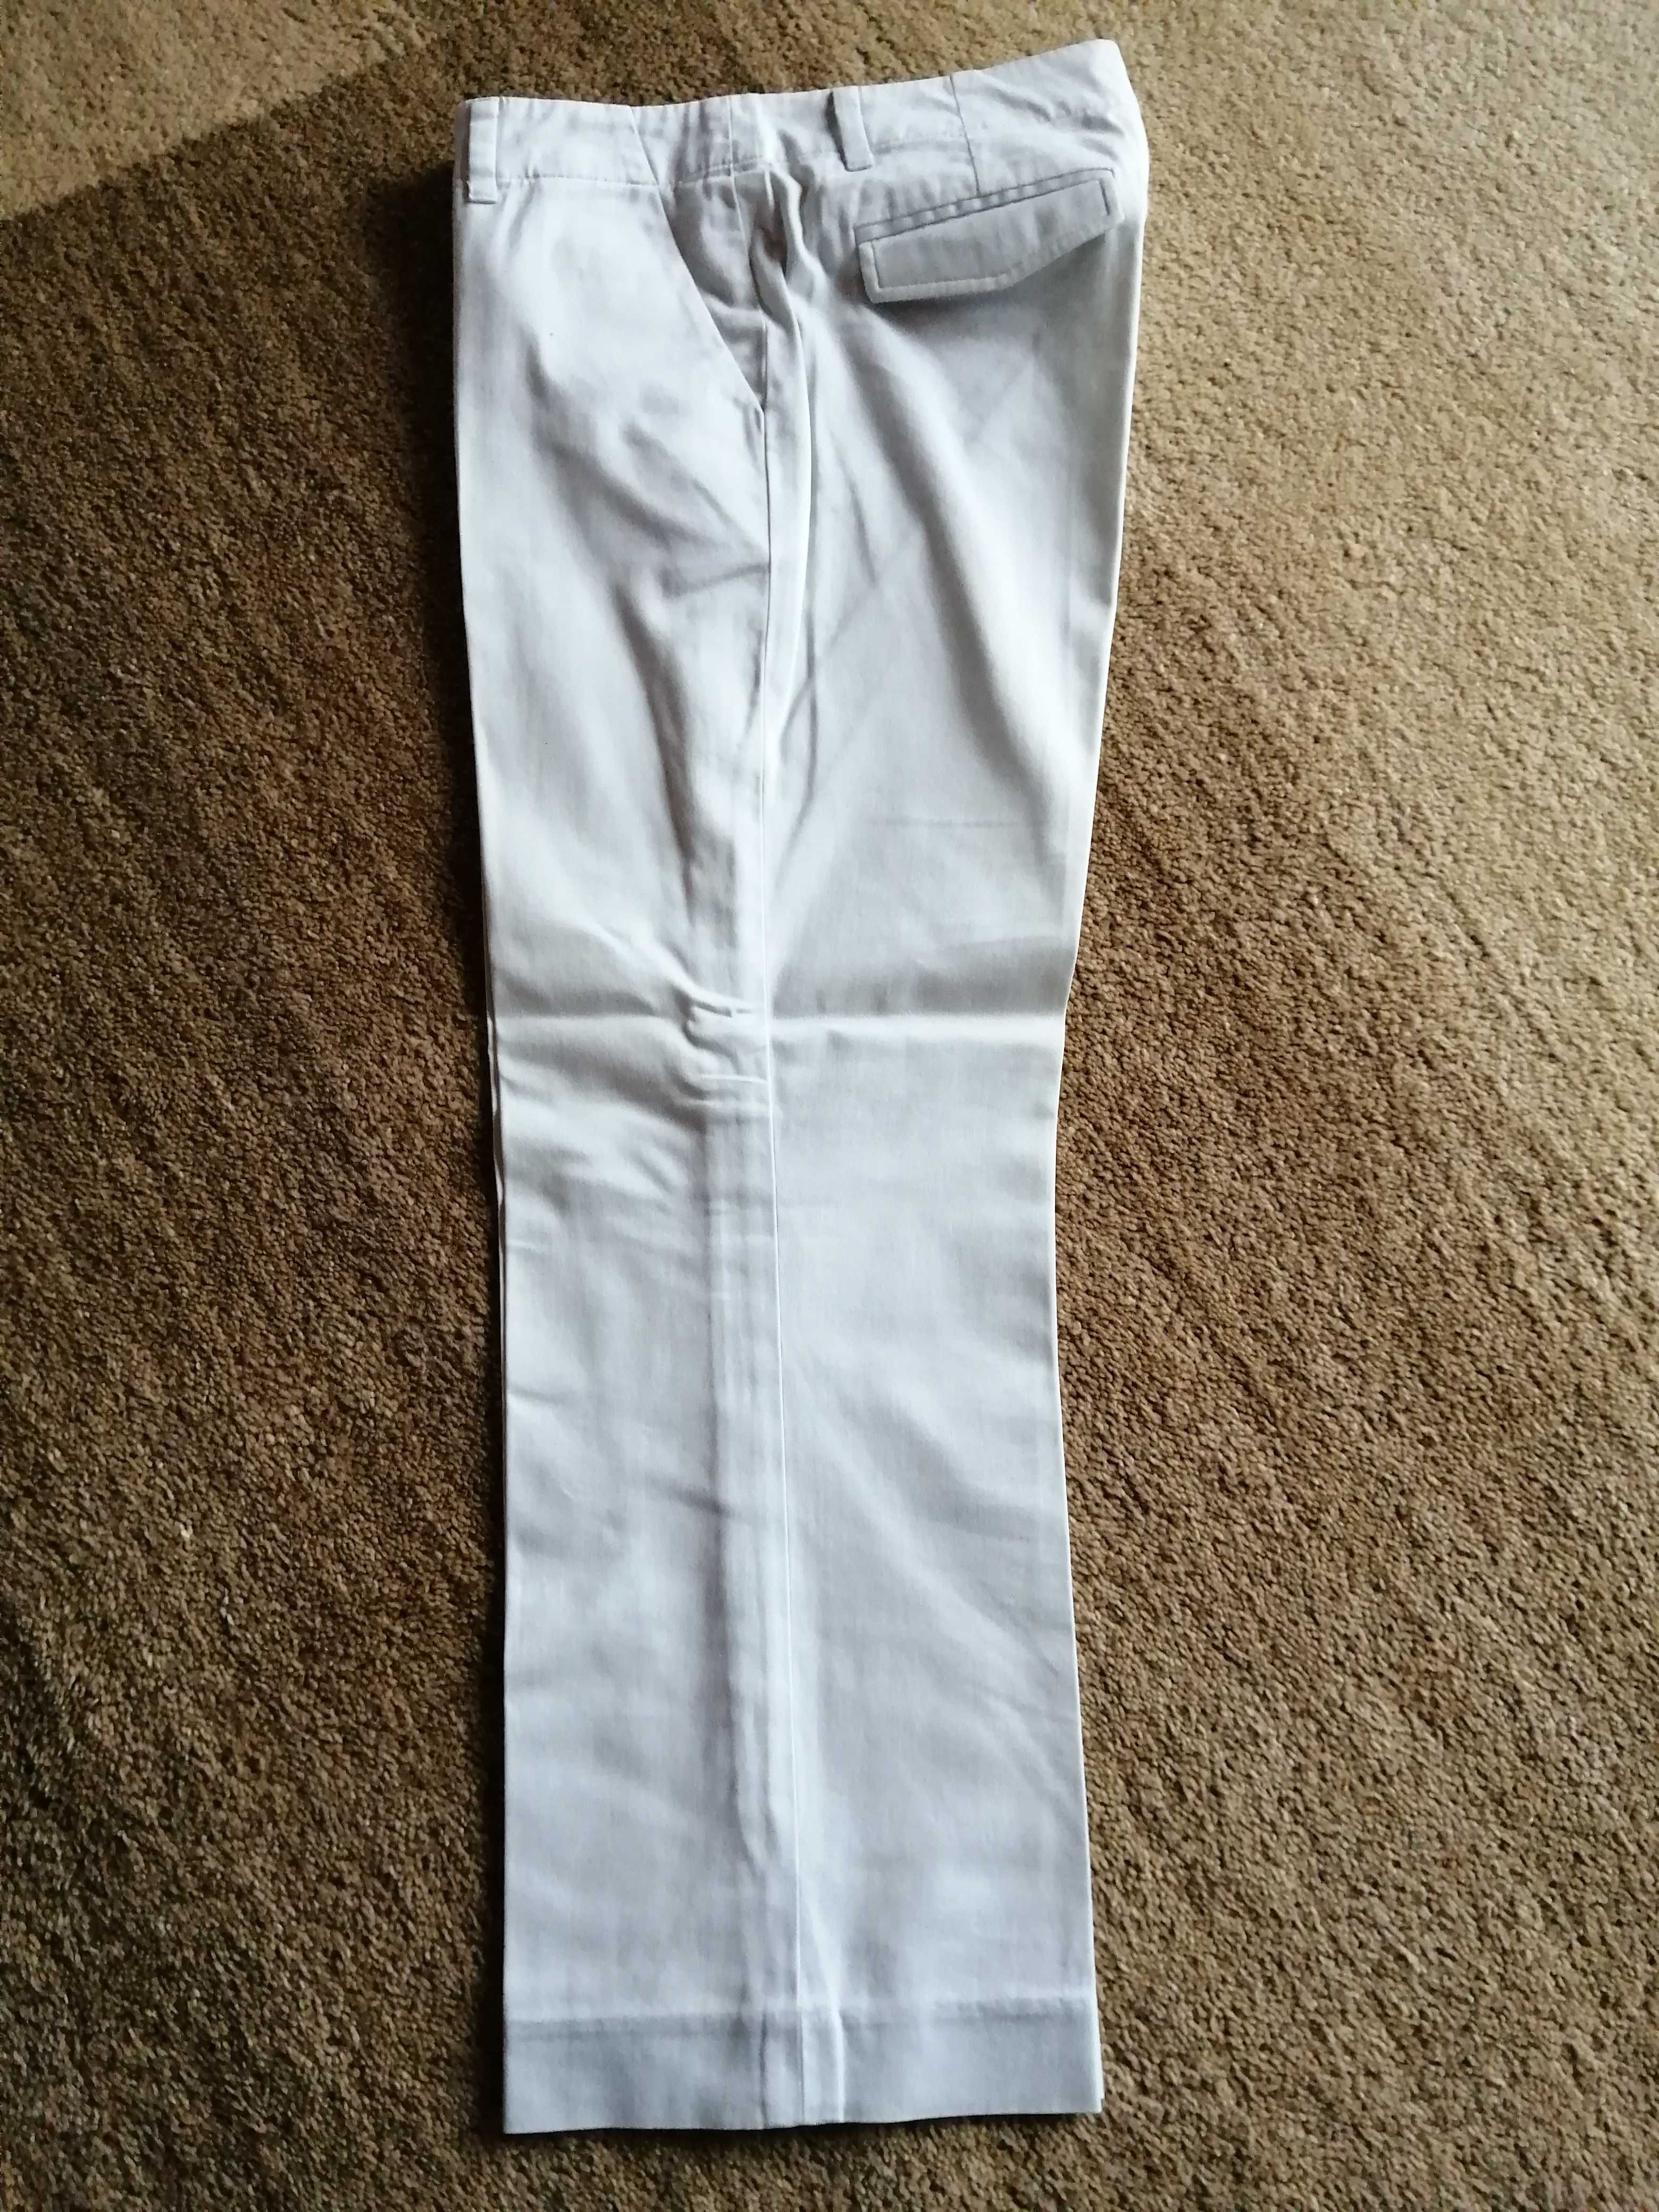 Spodnie damskie 3/4 Banana Republic, rozmiar xs/34